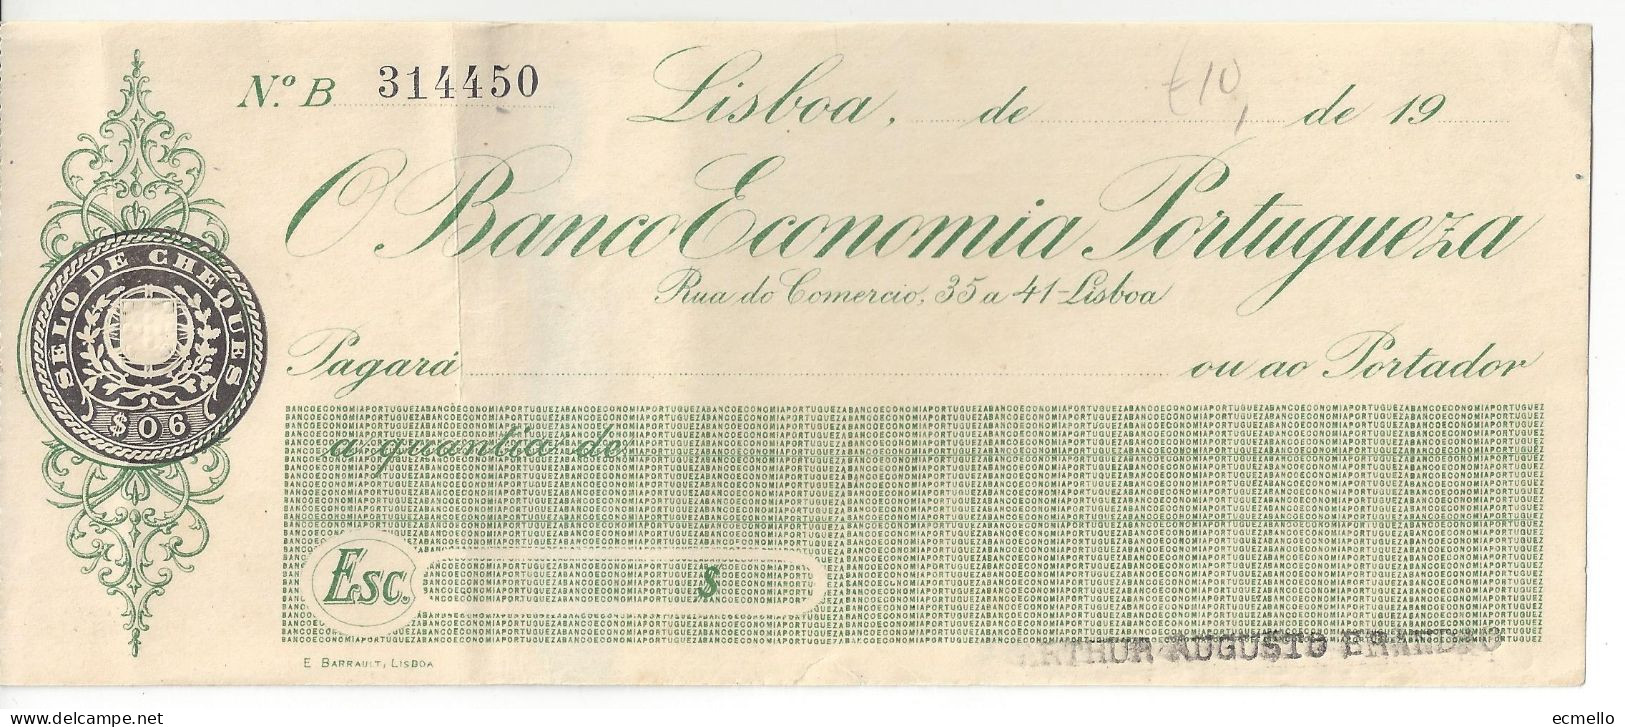 PORTUGAL CHEQUE CHECK BANCO ECONOMIA PORTUGUESA 1930'S SCARCE - Chèques & Chèques De Voyage